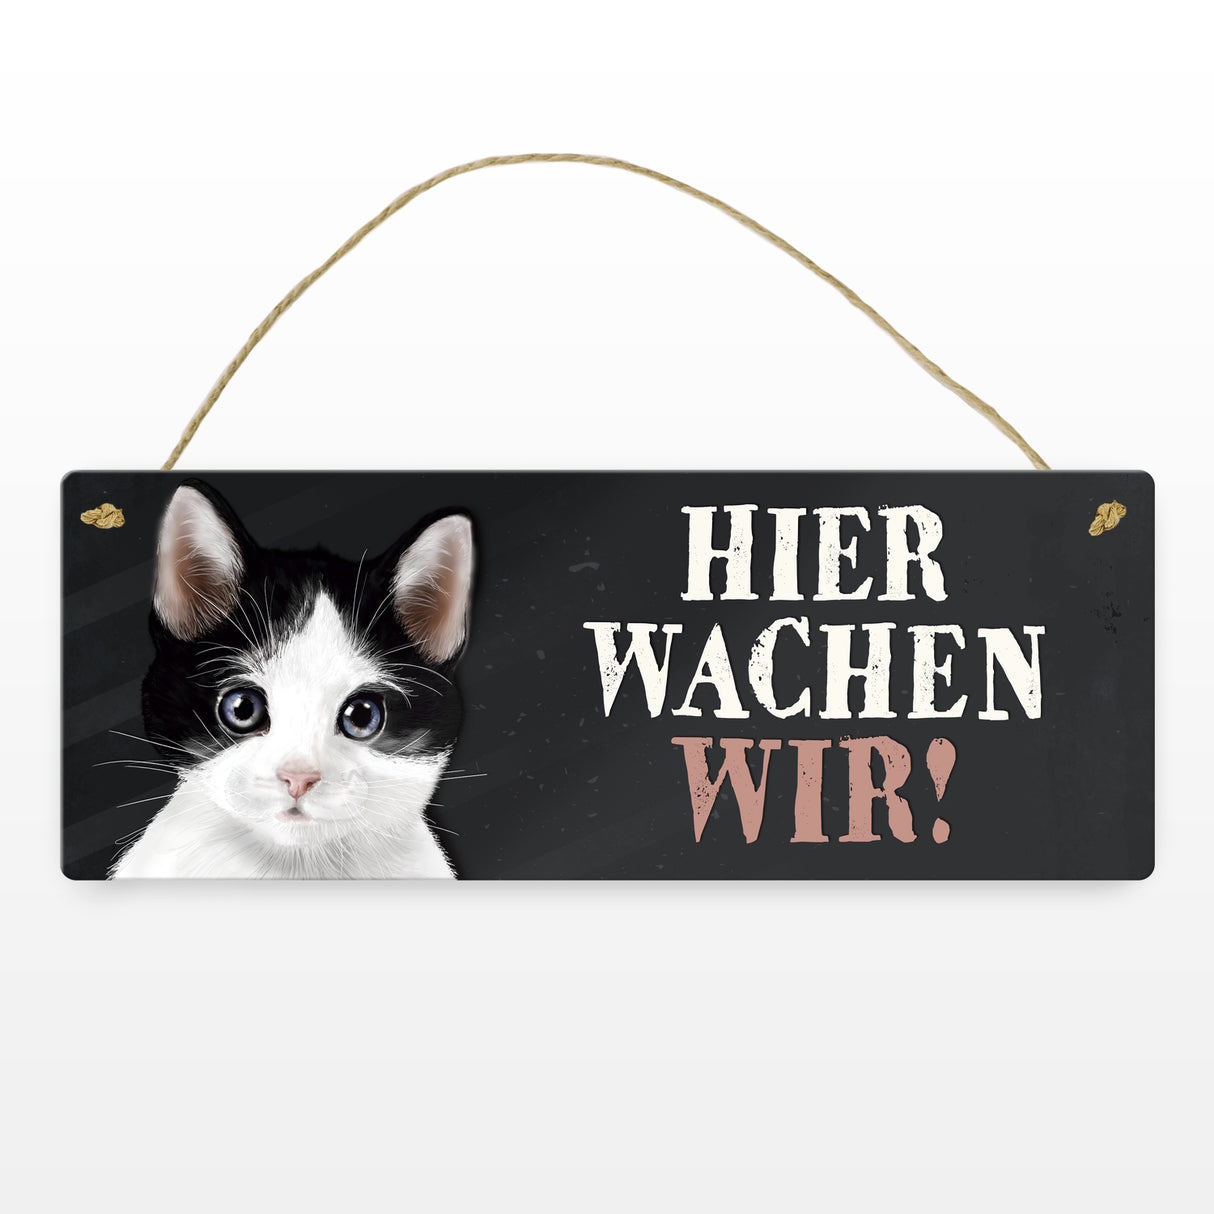 Metallschild mit Katze Motiv und Spruch: Hier wachen wir!